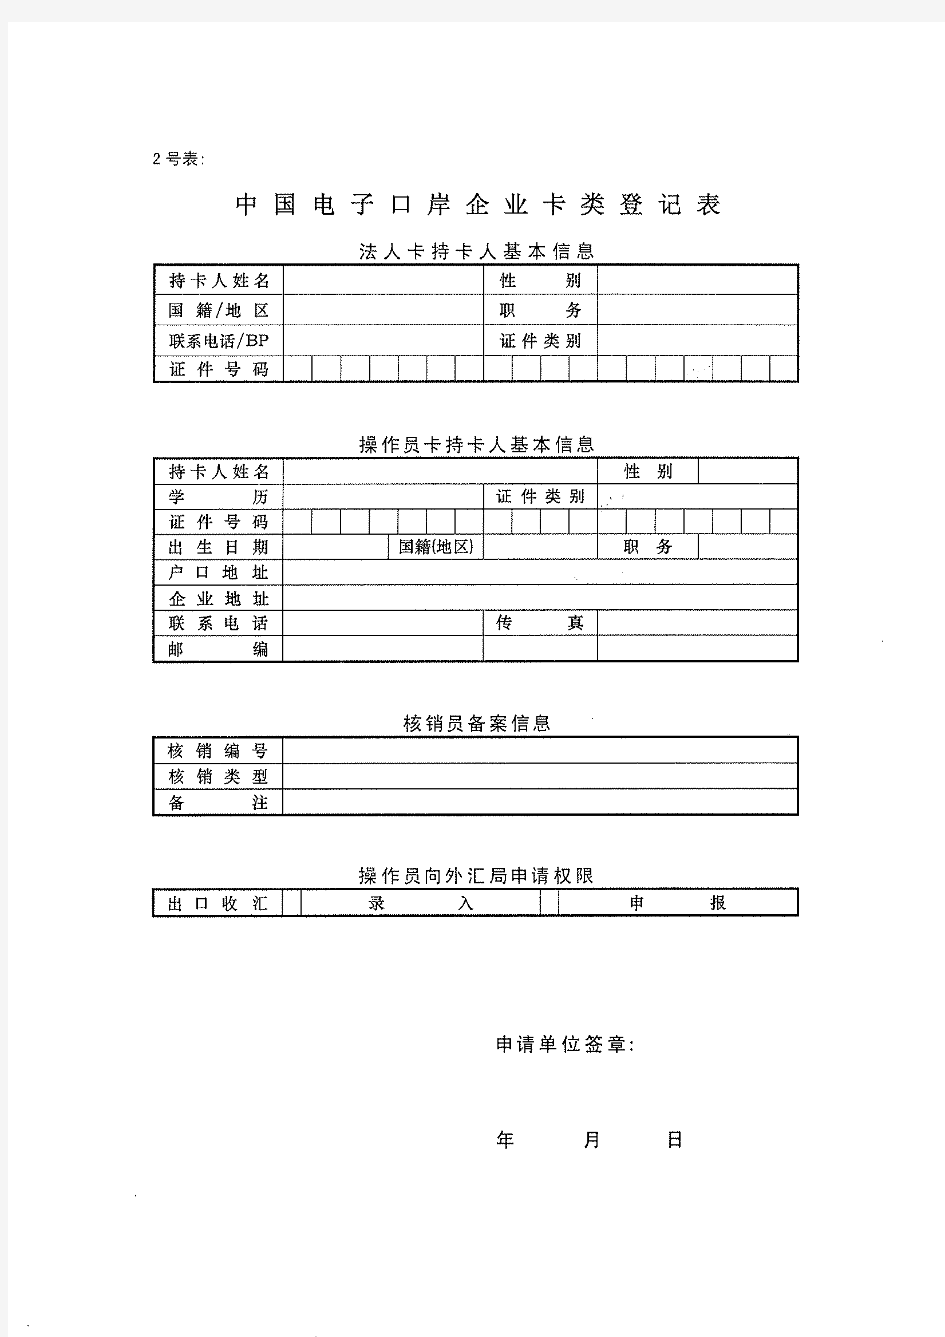 中国电子口岸企业情况登记表(1号表,2号表)